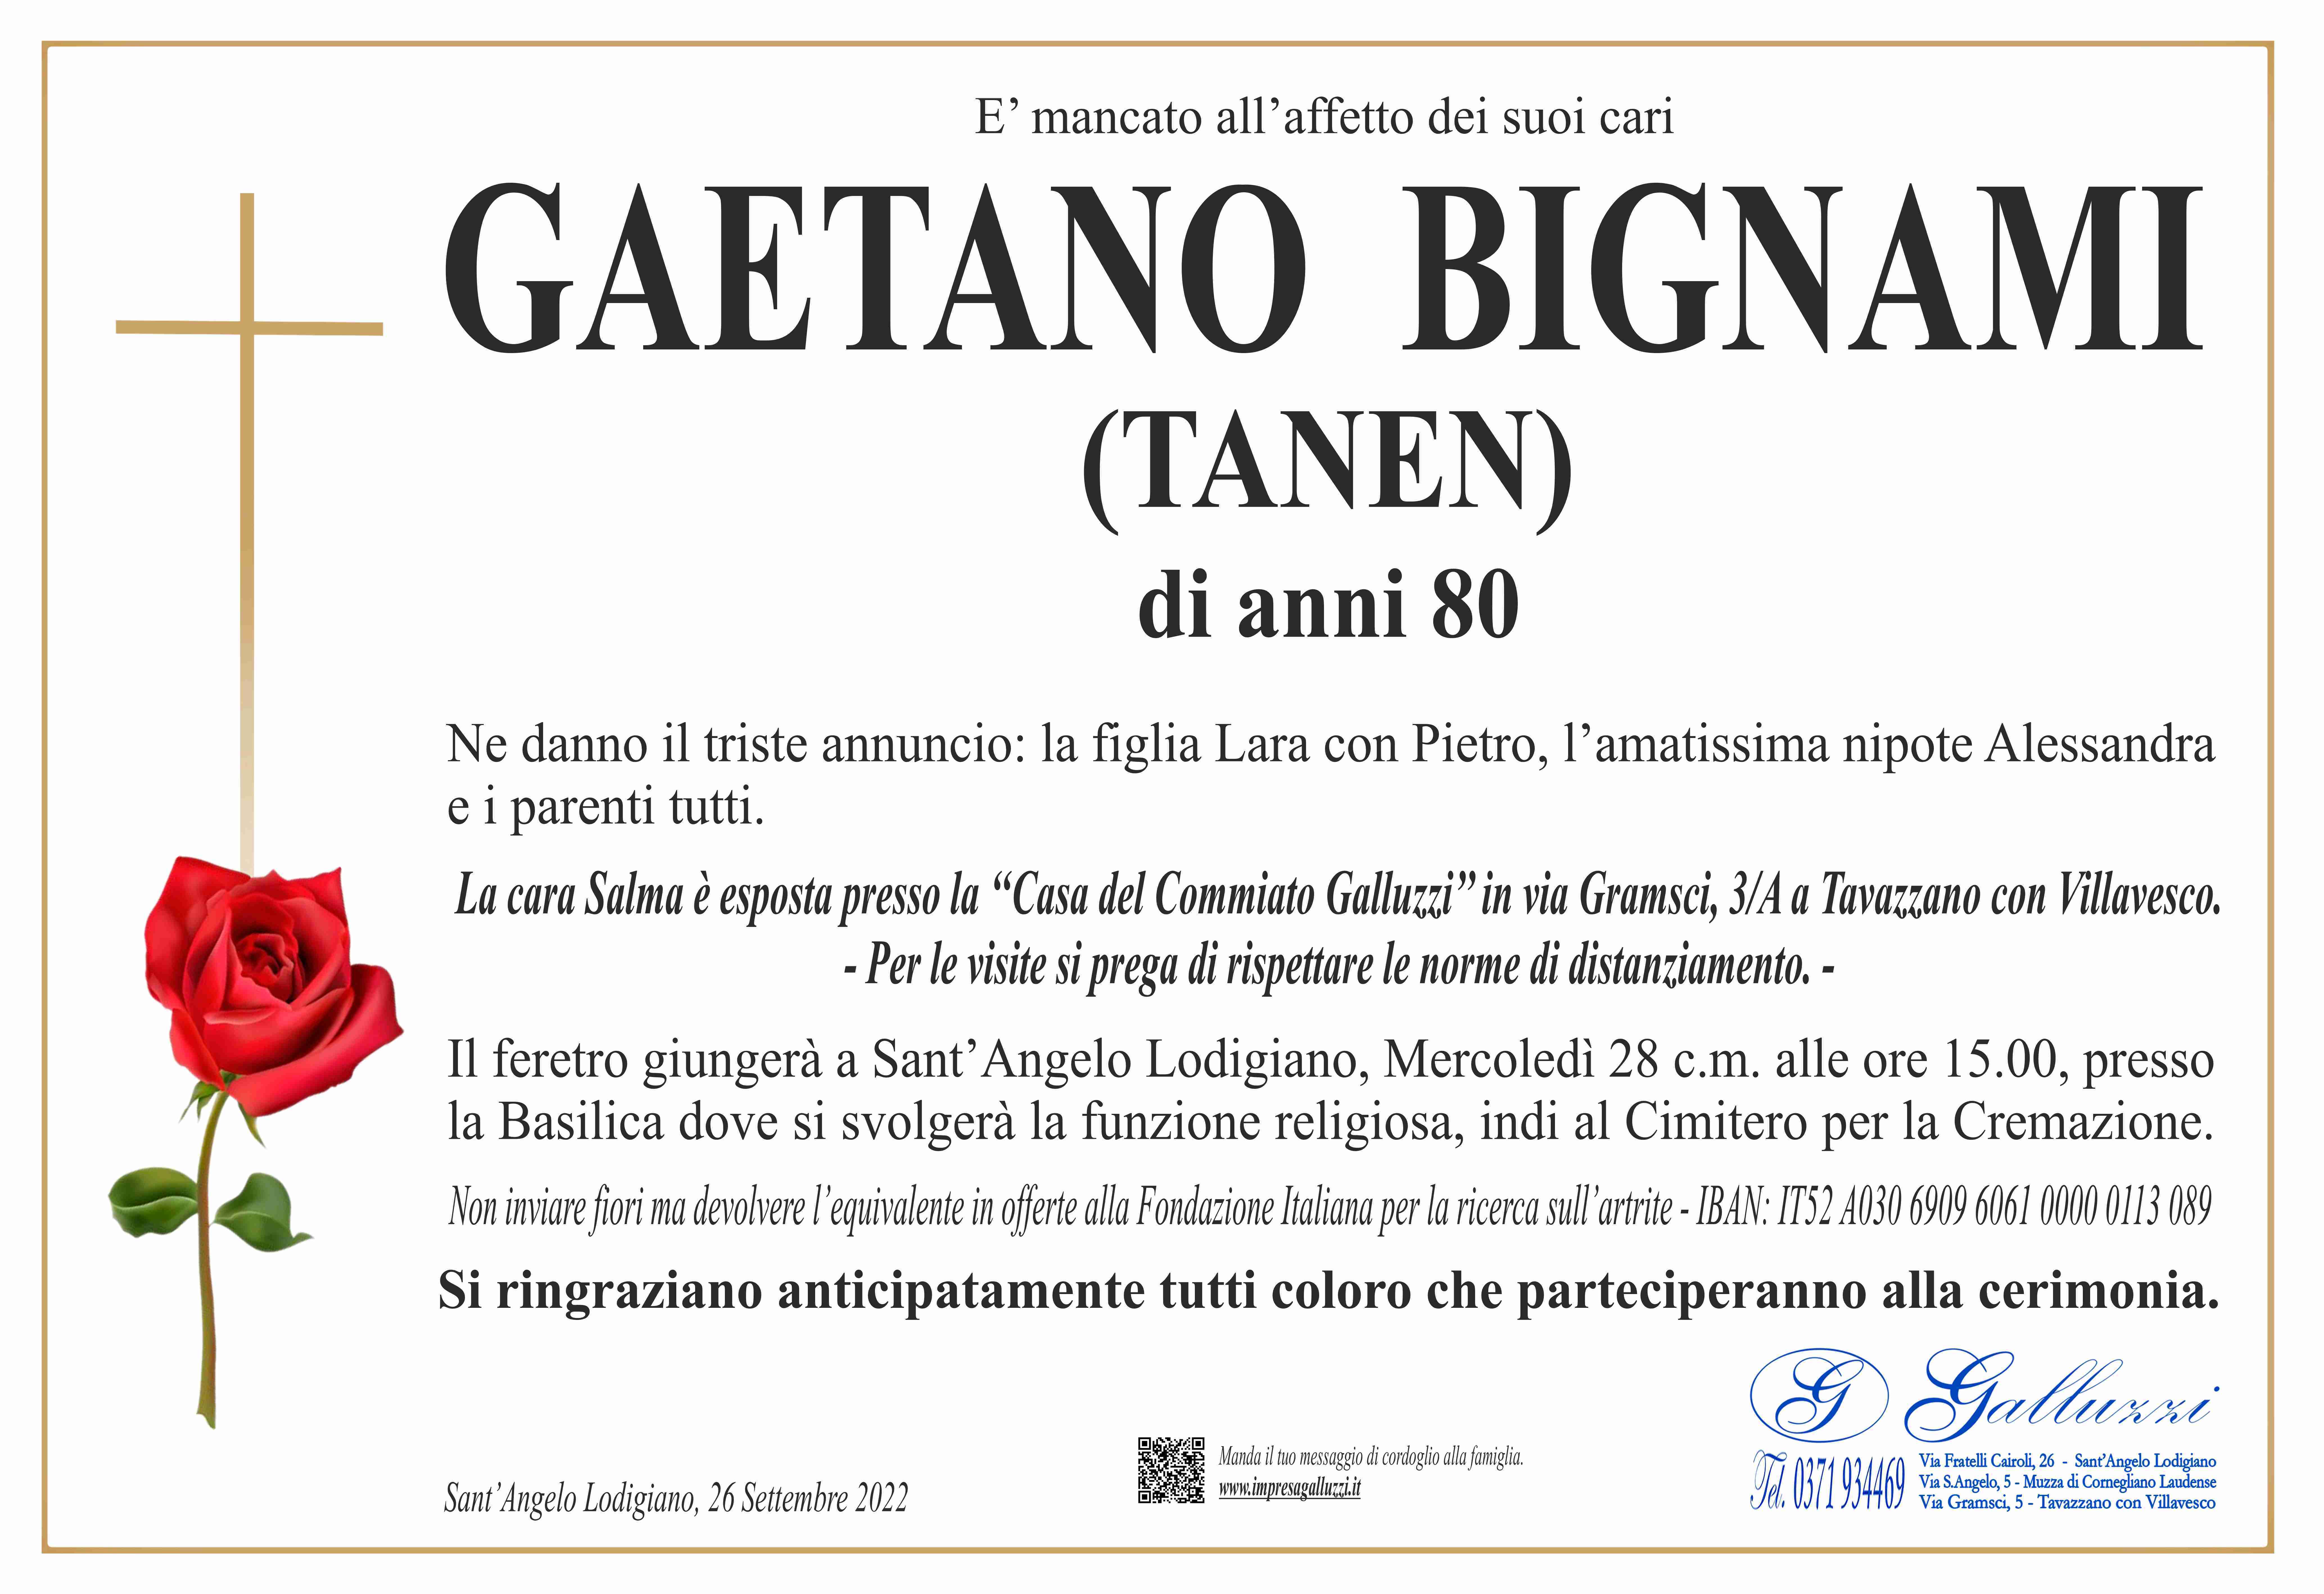 Gaetano Bignami